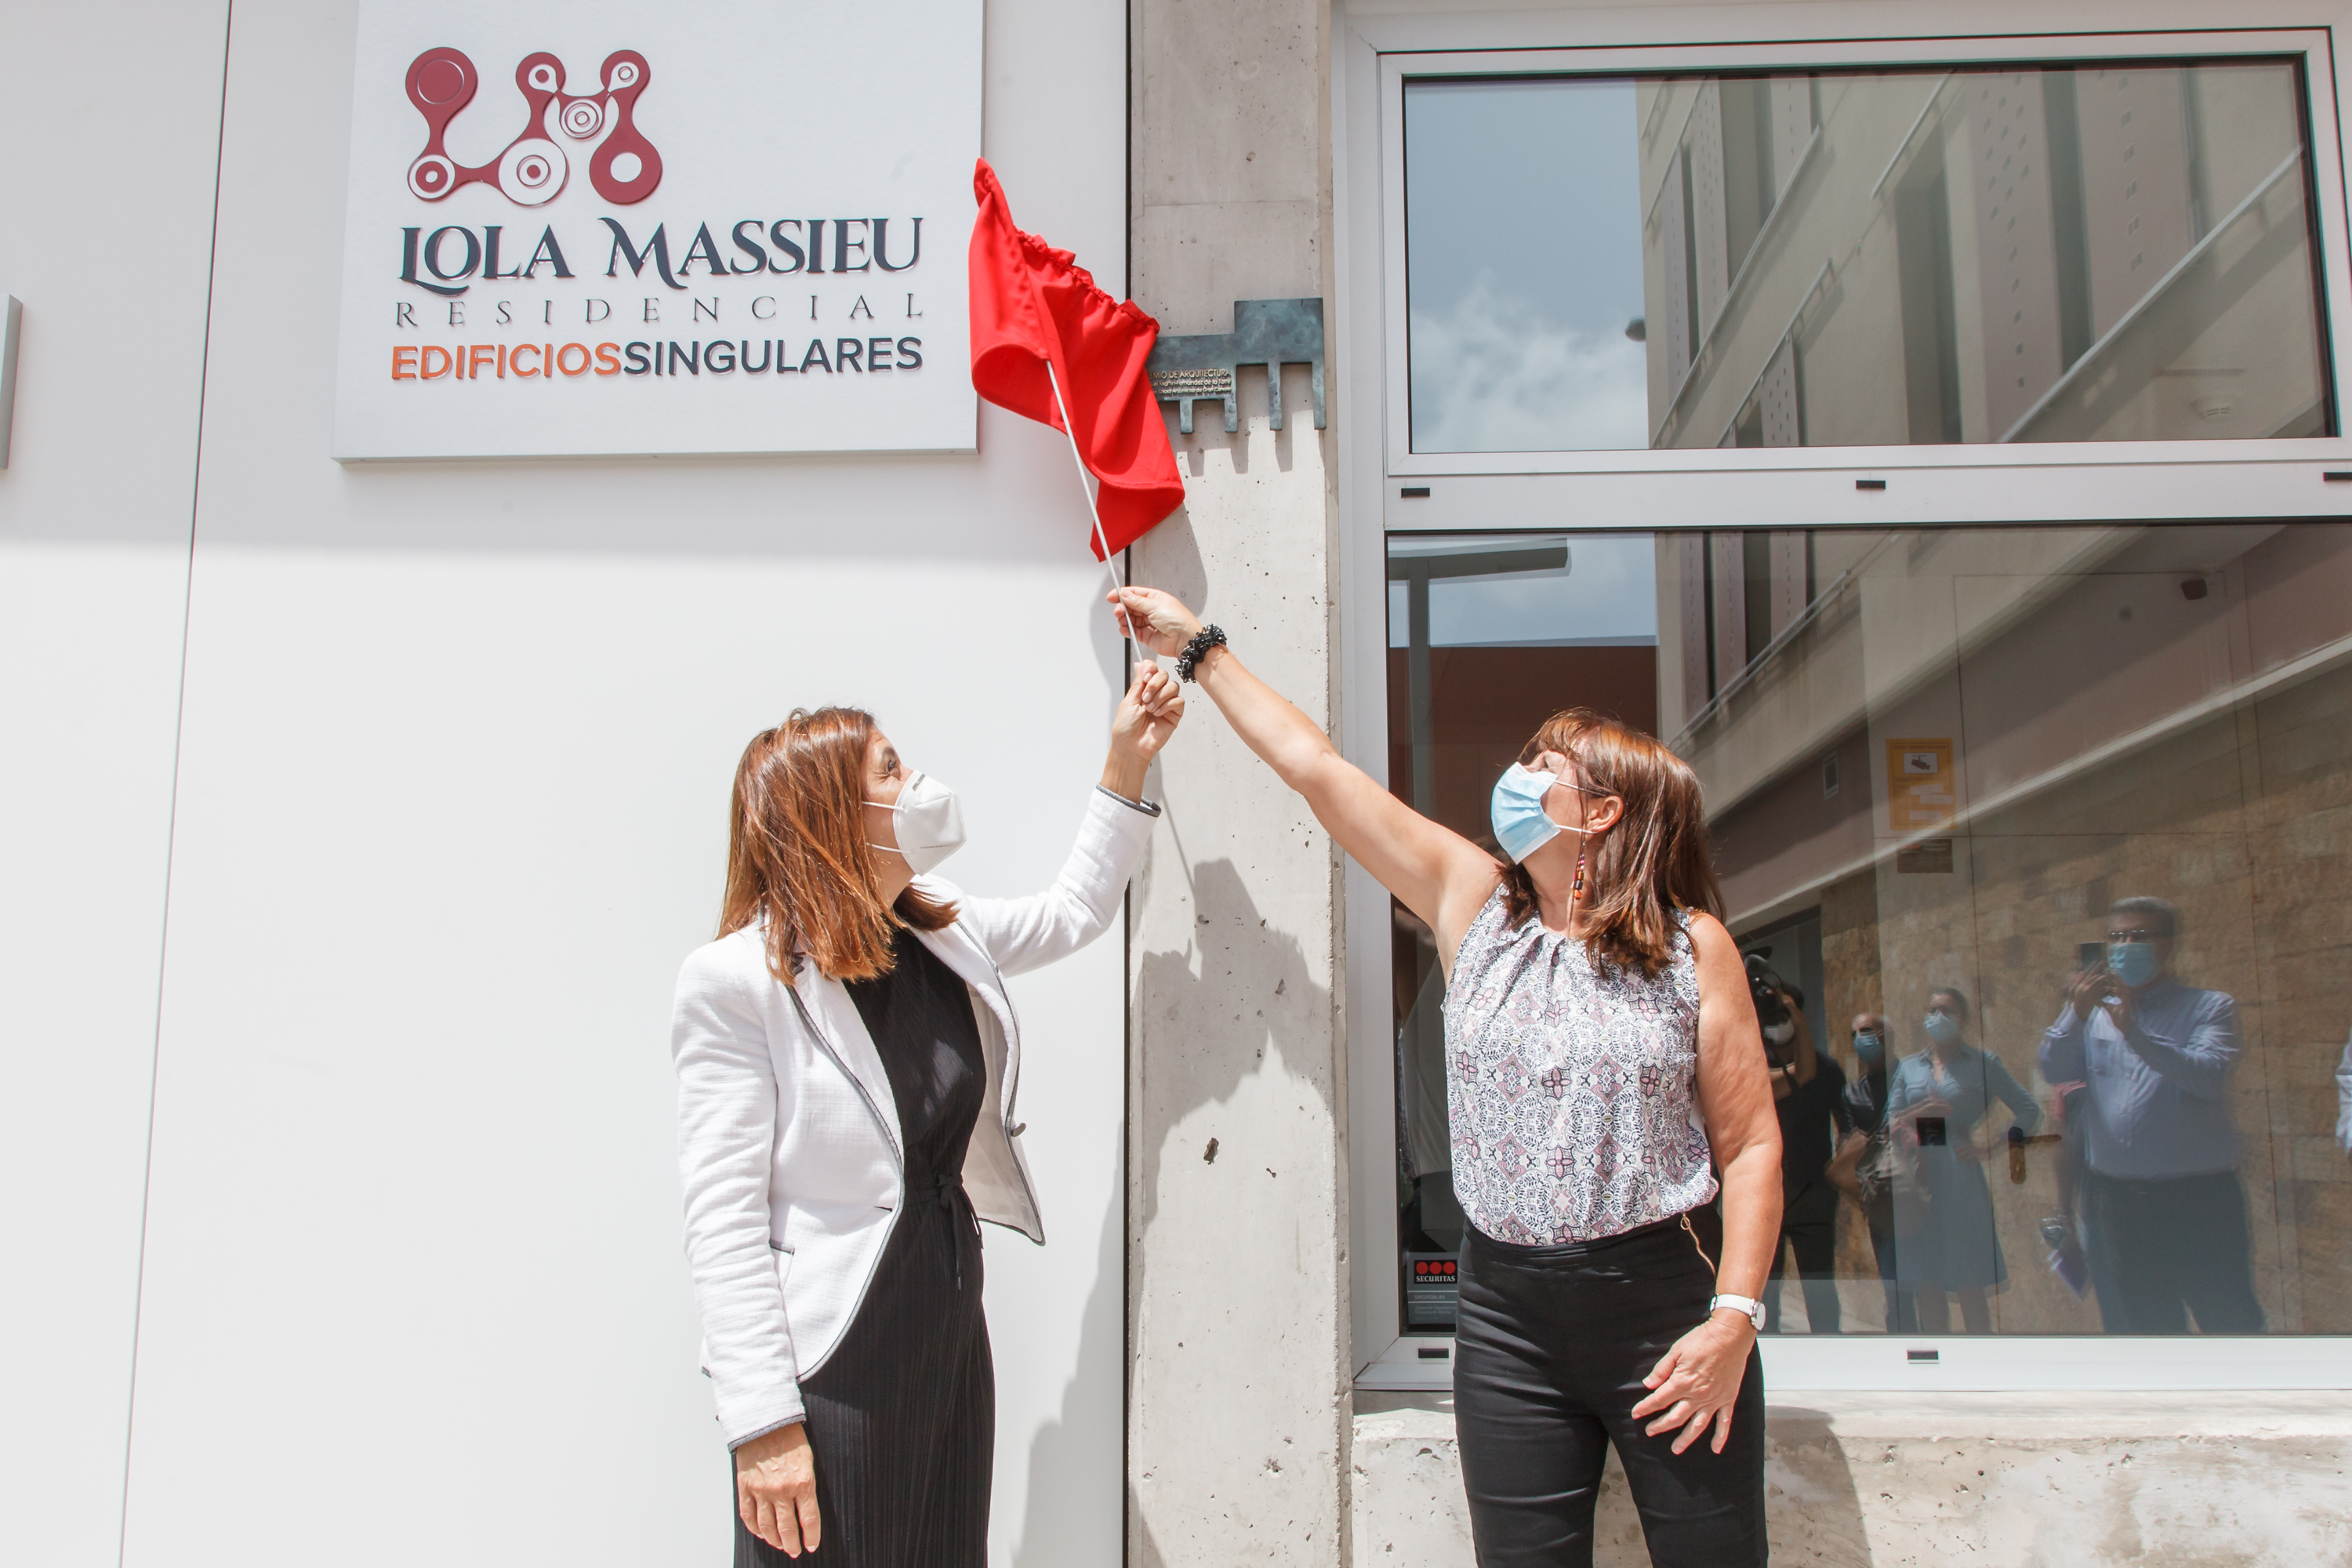 Inauguración de 'Lola Massieu' Residencial de Edificios Singulares en Telde / CanariasNoticias.es